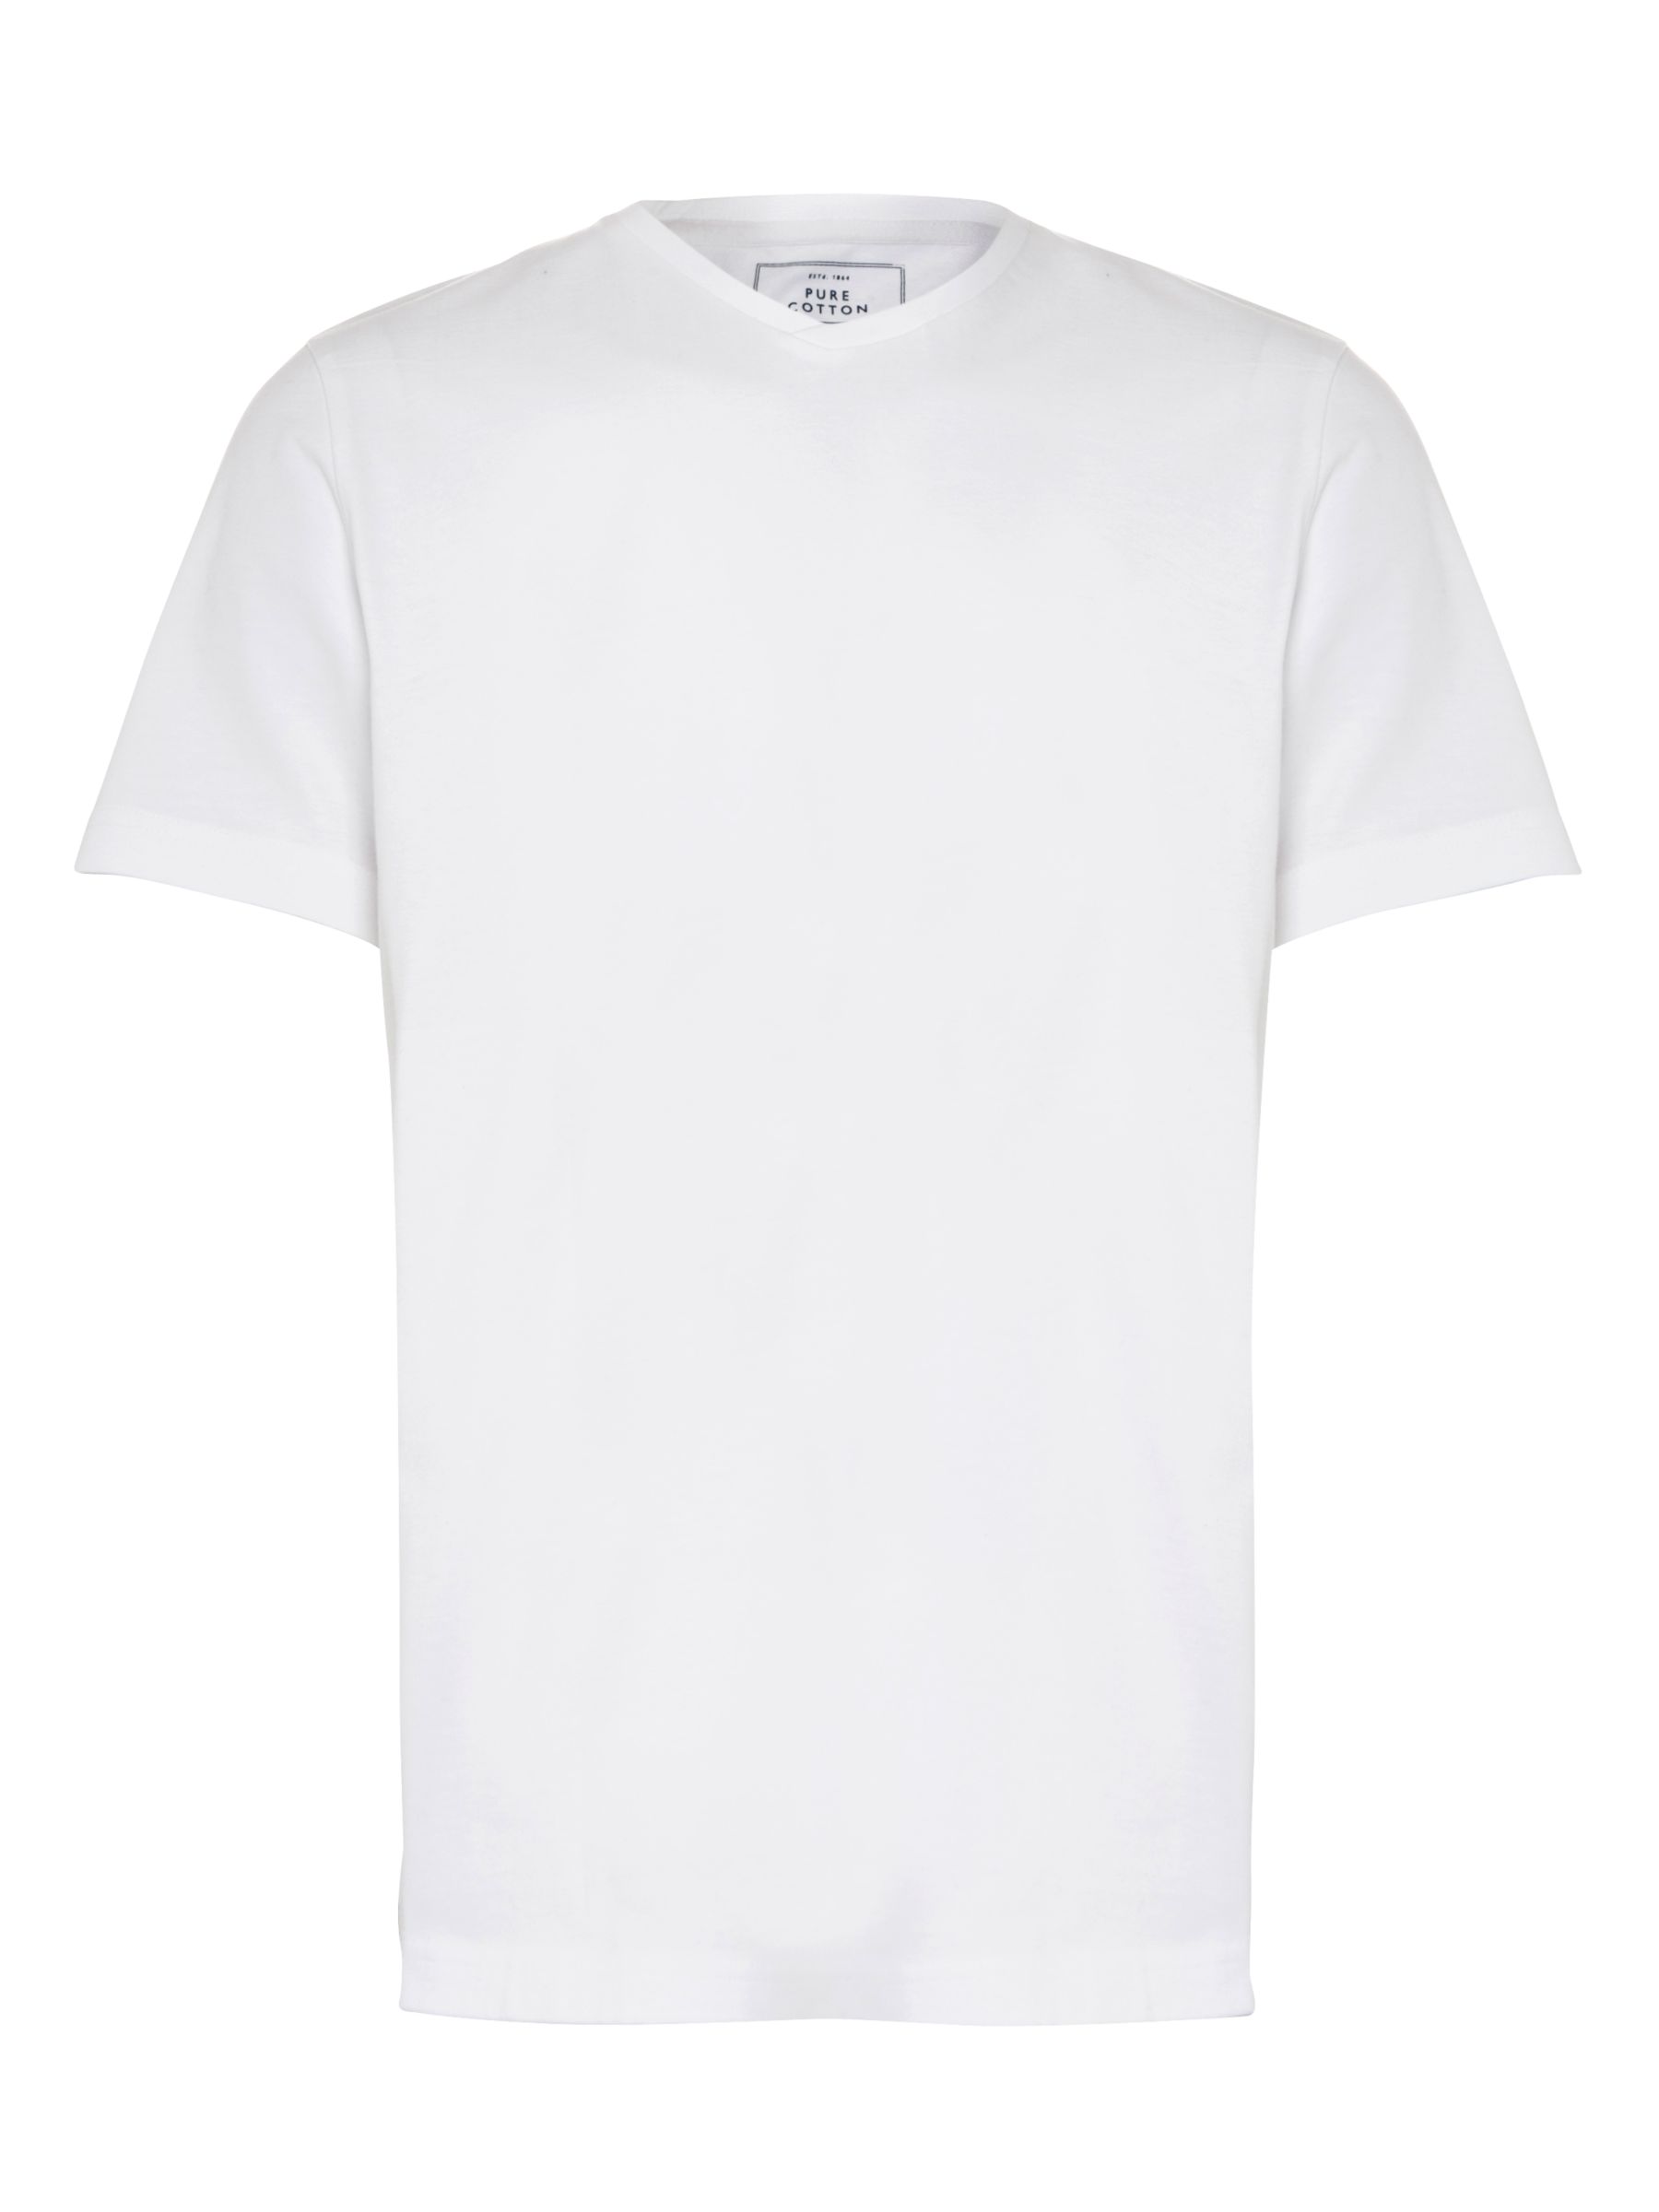 Buy John Lewis Jersey V-Neck Cotton T-Shirt | John Lewis